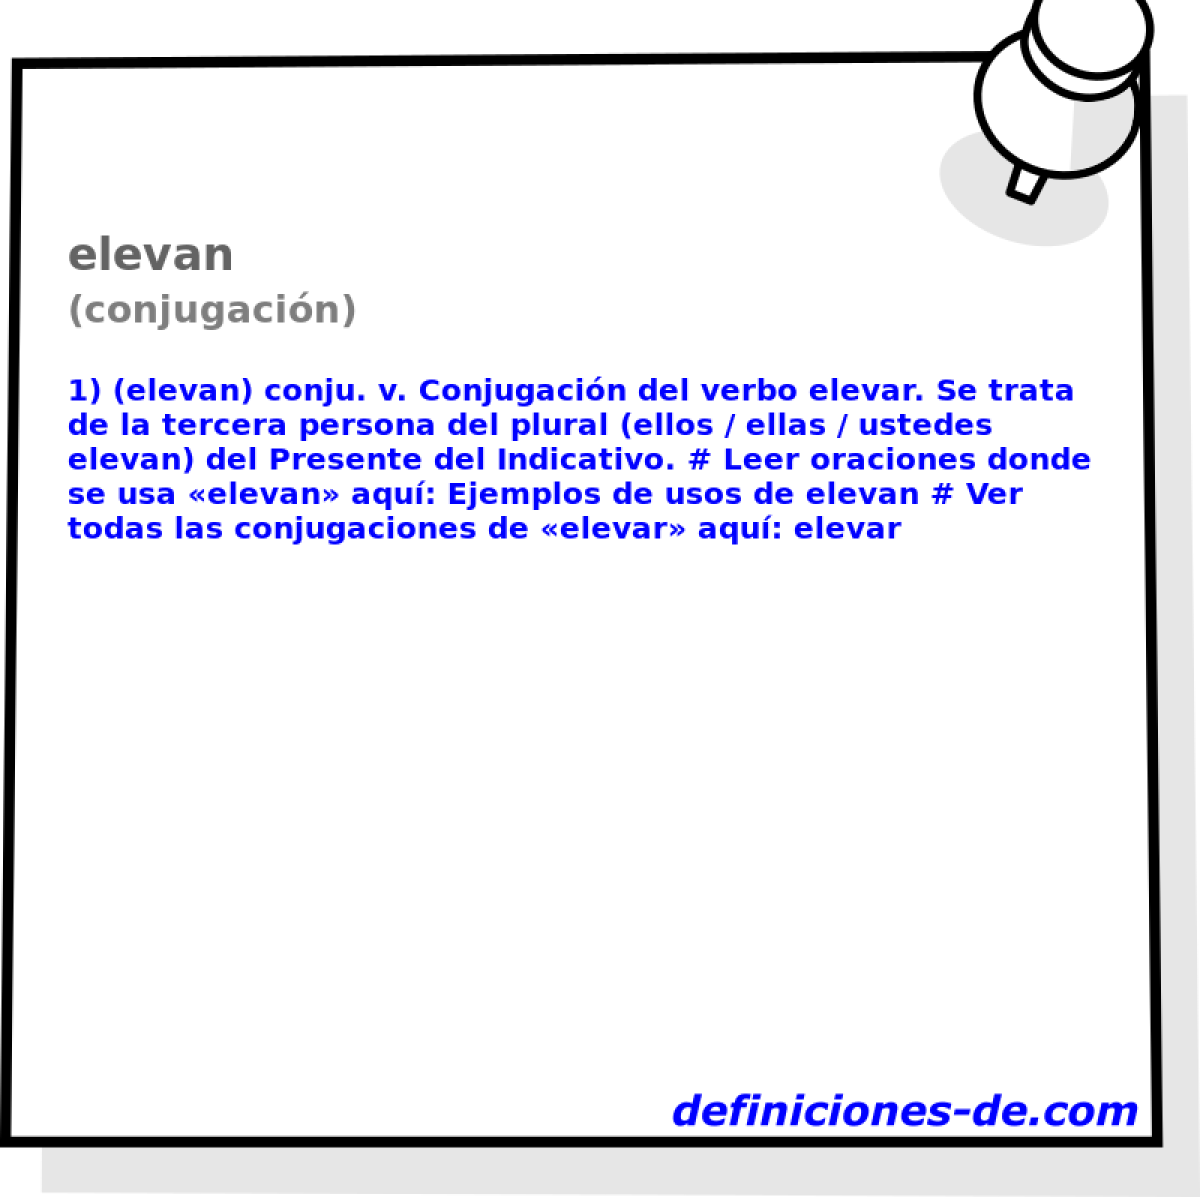 elevan (conjugacin)